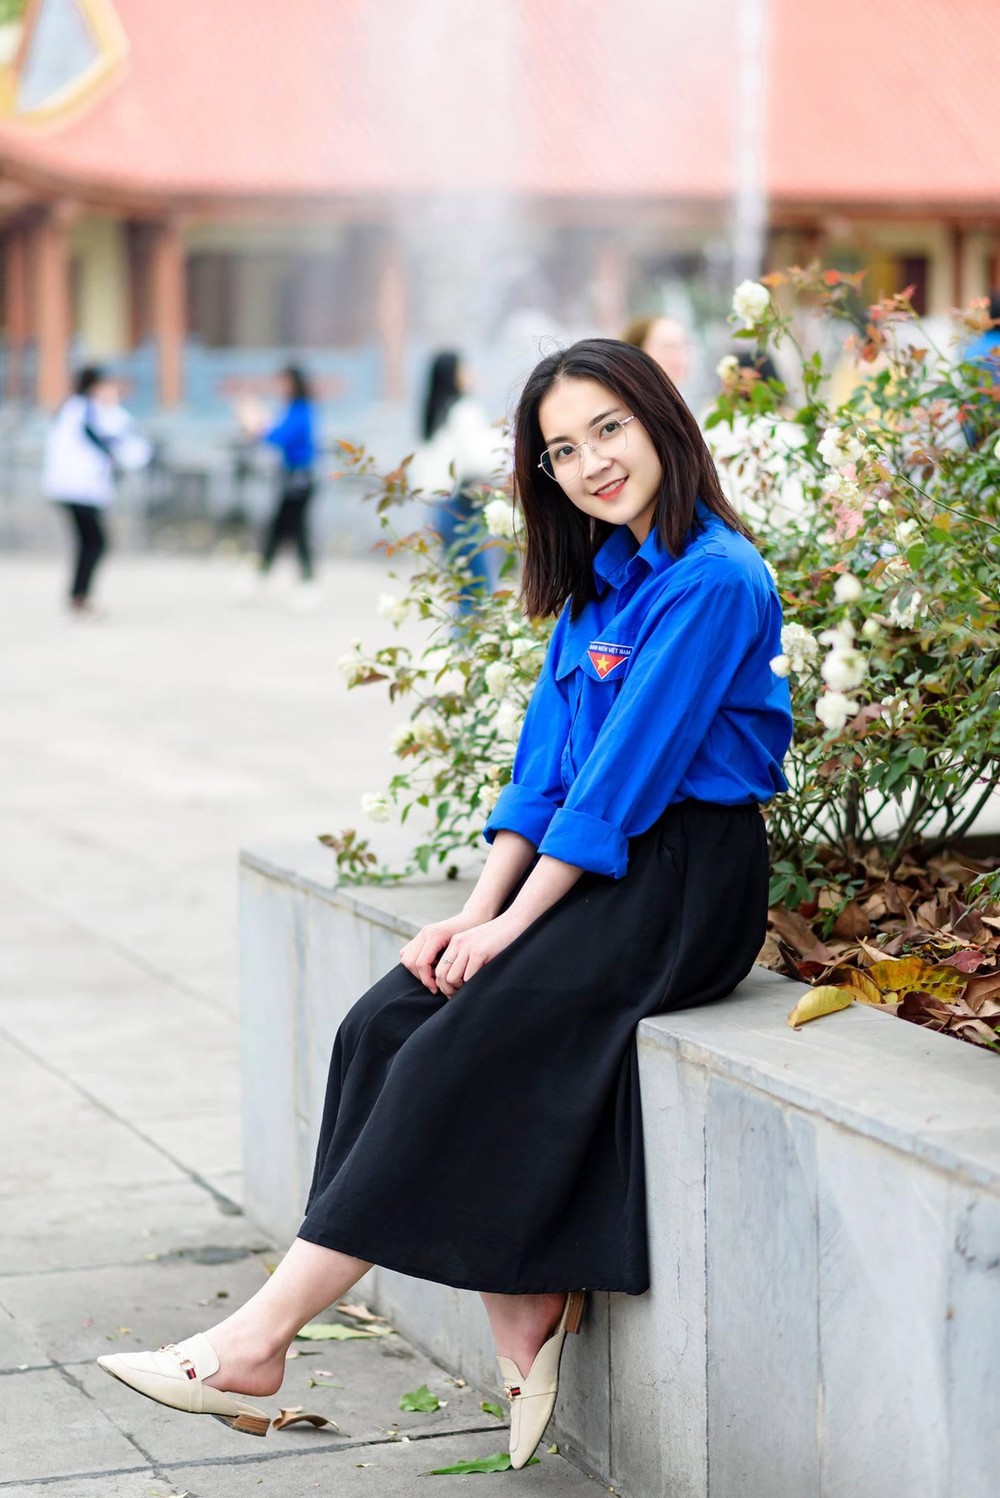 Nữ sinh tài sắc vẹn toàn của trường Đại học Y Dược - Đại học Thái Nguyên - Ảnh 1.